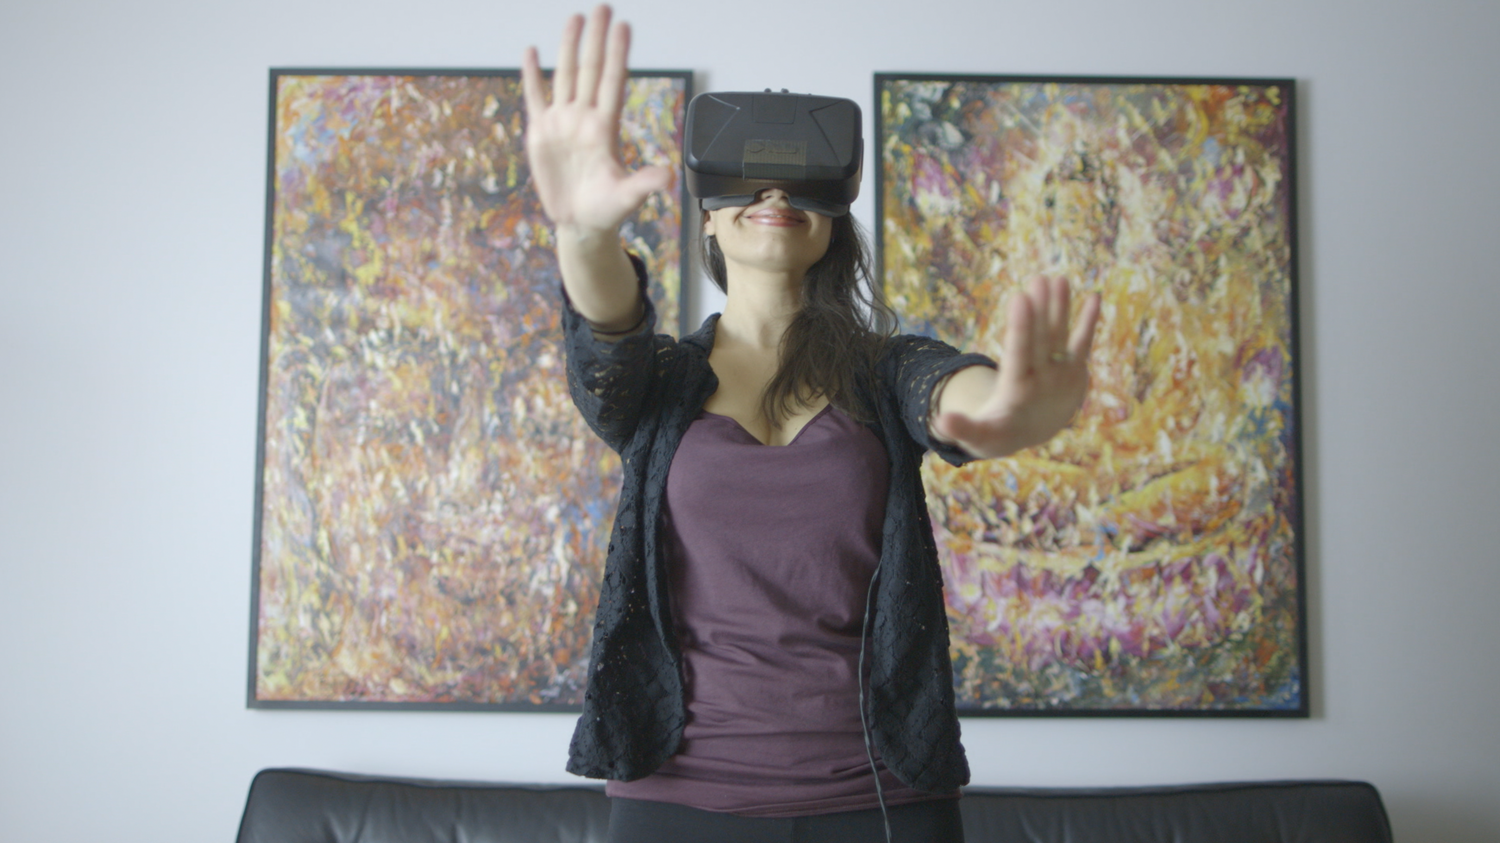 El tacto permite dar más realismo a las experiencias de realidad virtual.